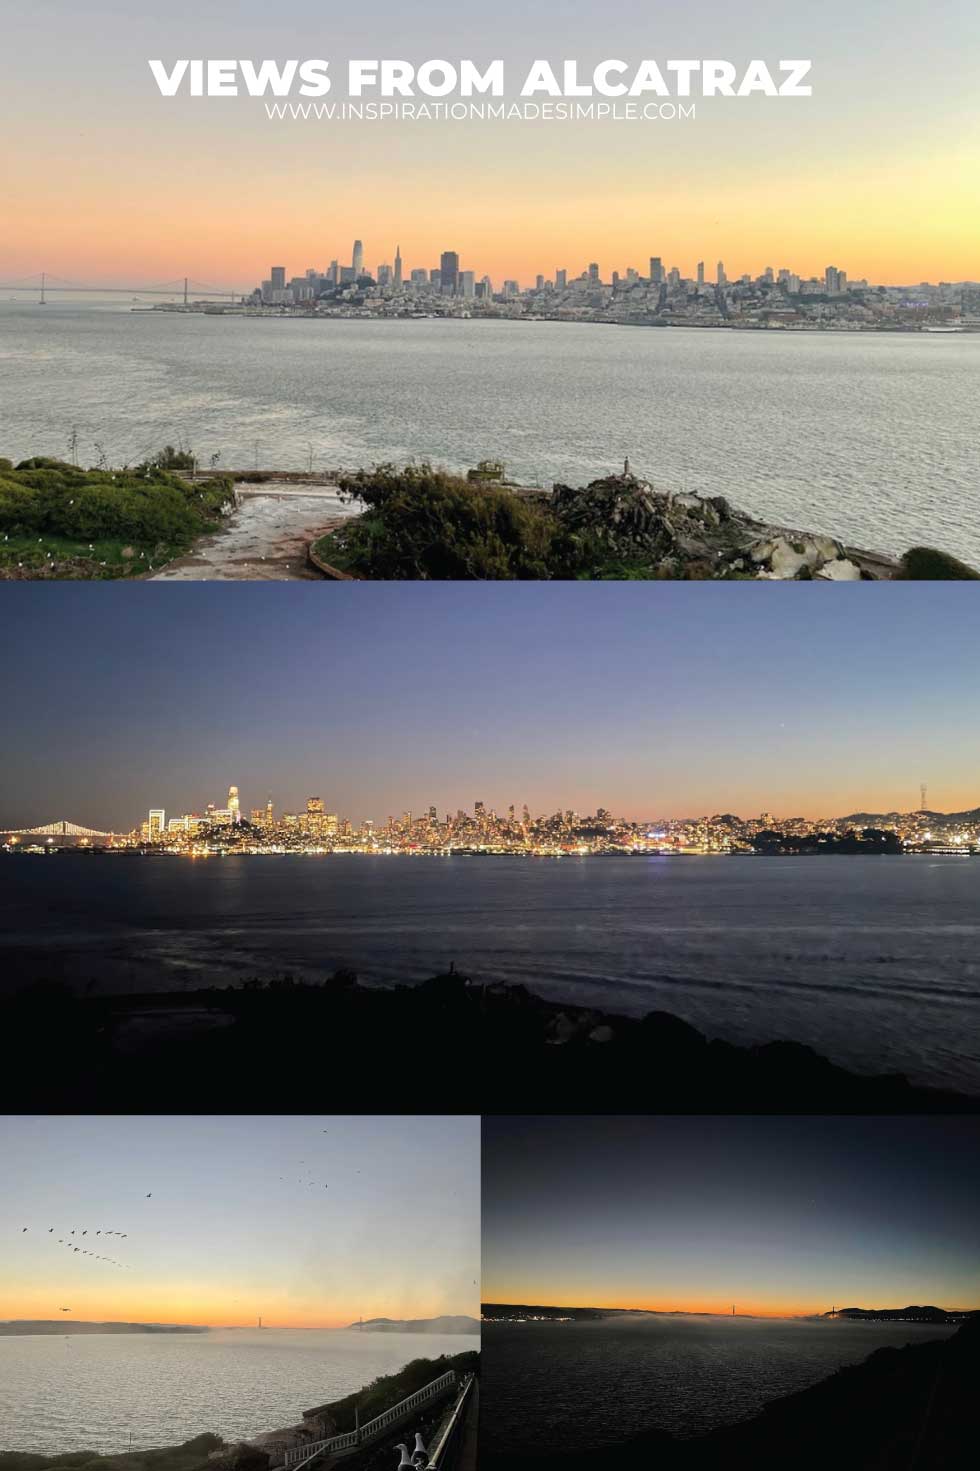 Views from Alcatraz